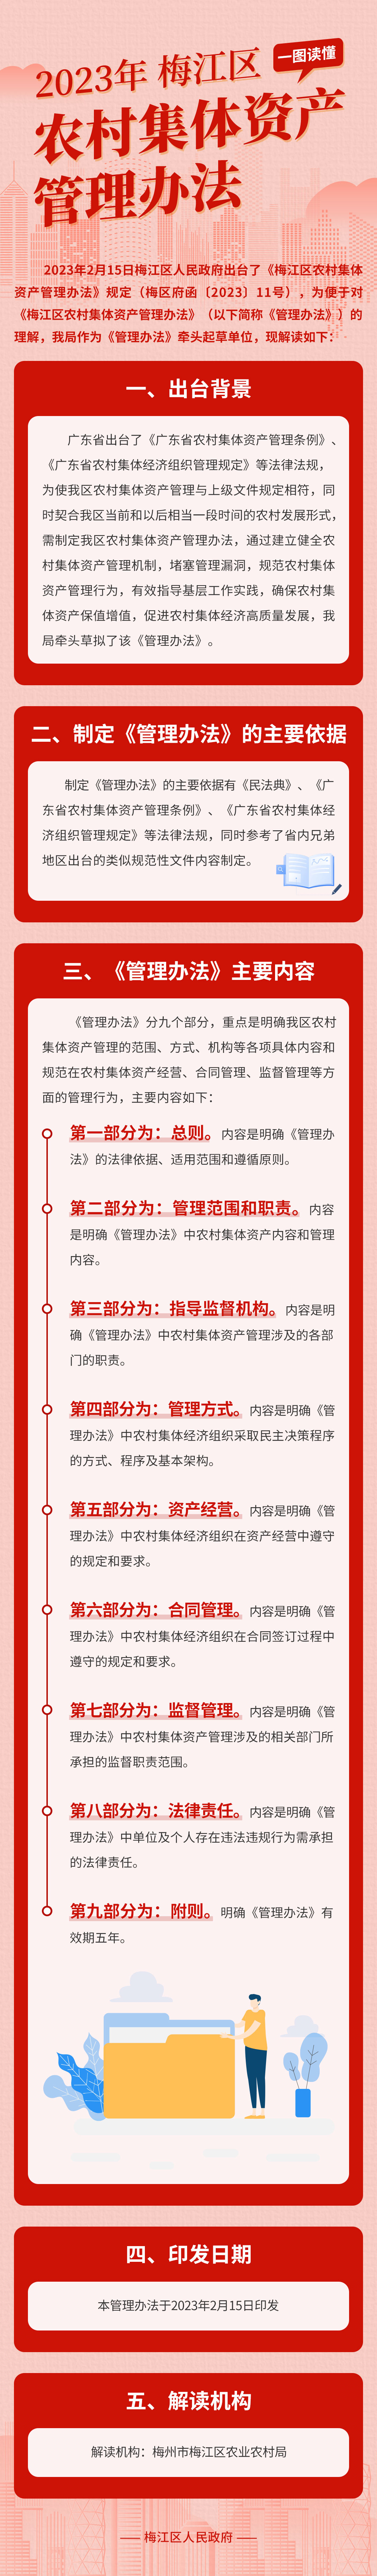 梅江区农村集体资产管理办法政策图解长图.jpg